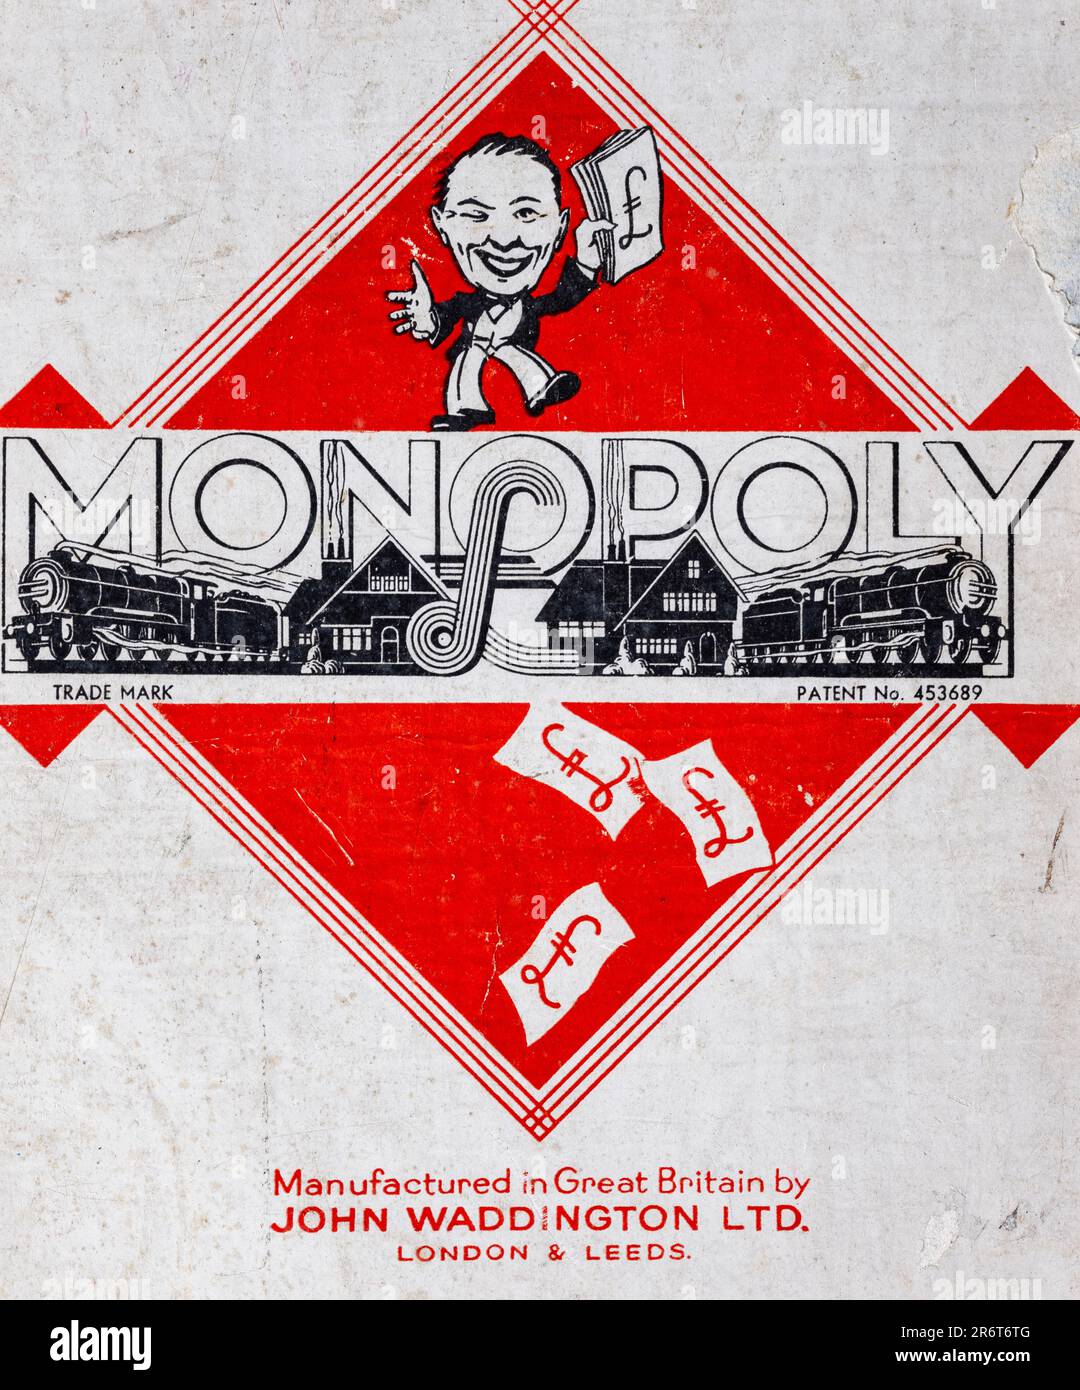 Vintage Monopoly jeu de société, fabriqué par Waddington de Londres et  Leeds pendant la Seconde Guerre mondiale montrant le gros plan de la  couverture de boîte Photo Stock - Alamy